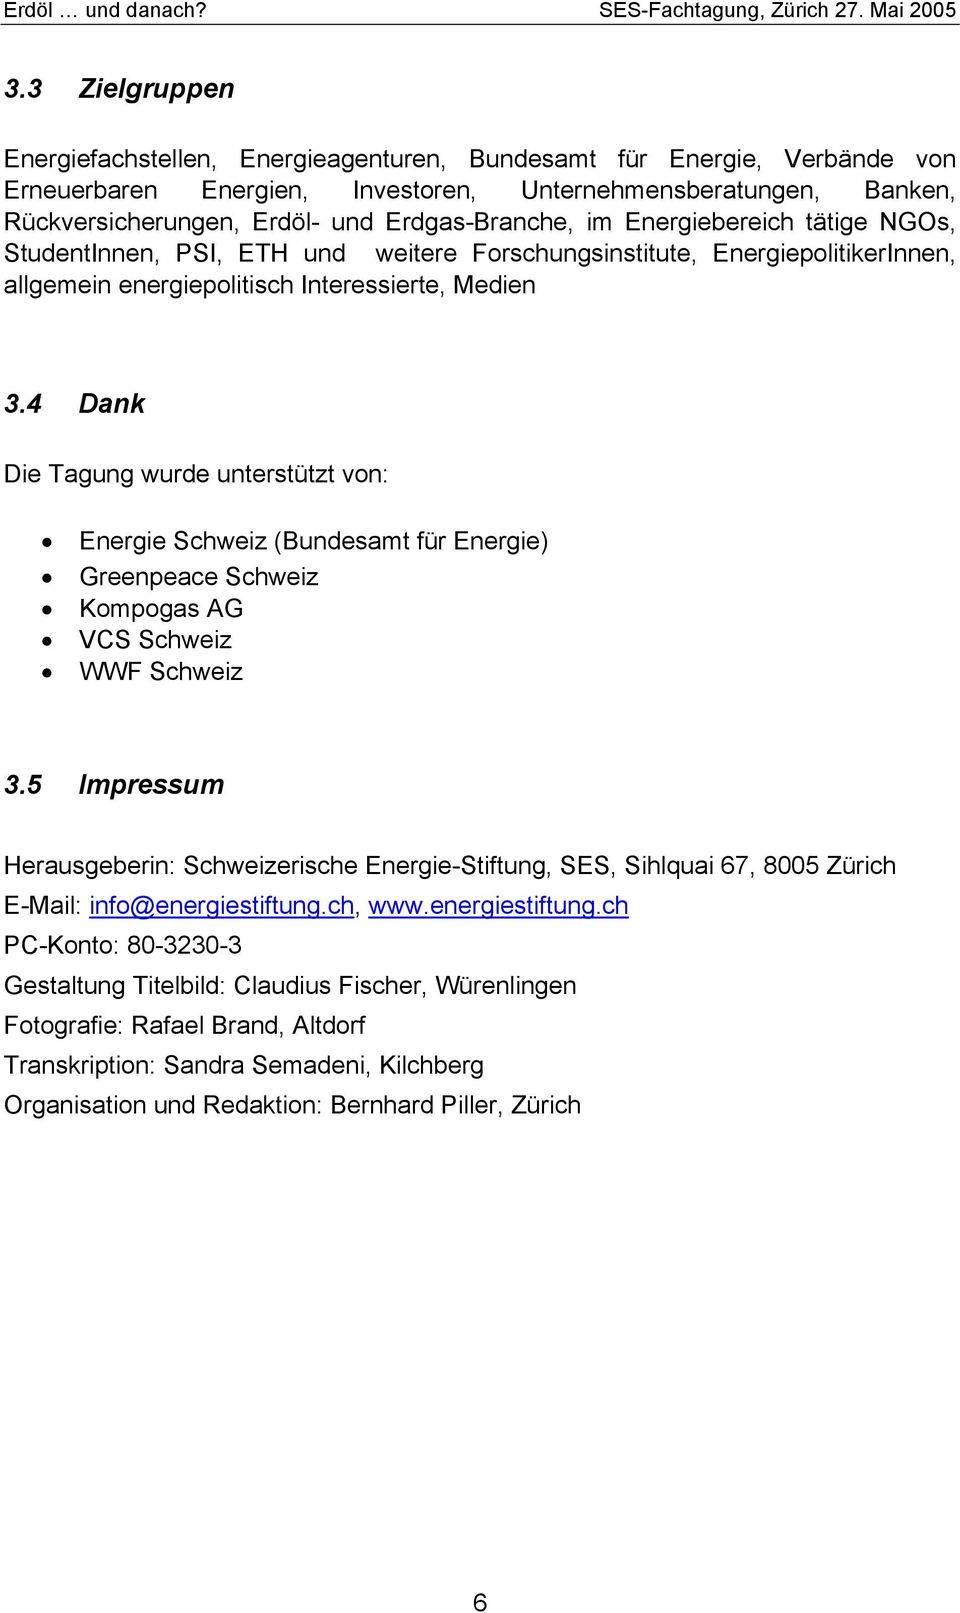 4 Dank Die Tagung wurde unterstützt von: Energie Schweiz (Bundesamt für Energie) Greenpeace Schweiz Kompogas AG VCS Schweiz WWF Schweiz 3.